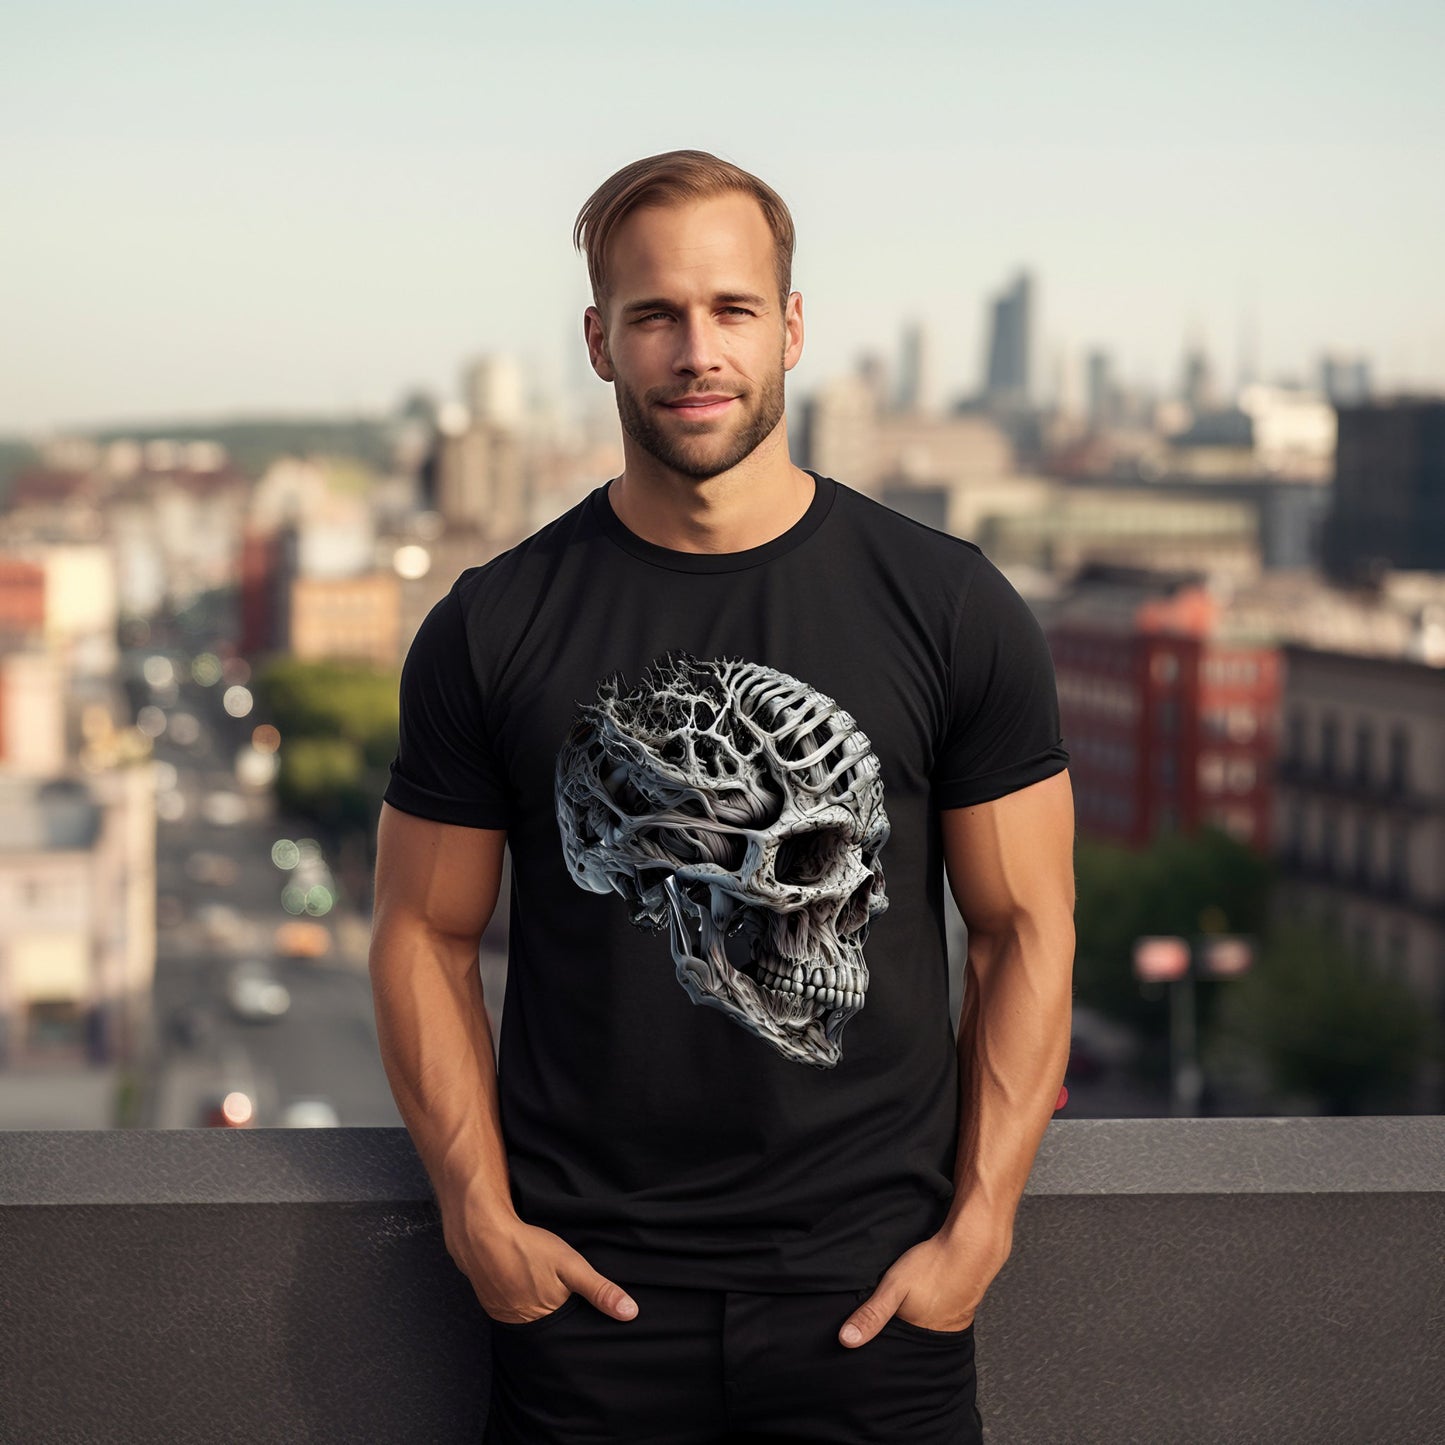 Vyro marškinių su senovinės kaukolės spauda dizainas, stovinčio miesto fone, Designedbyme.lt produkcija, Vyriški marškinėliai,Visi produktai